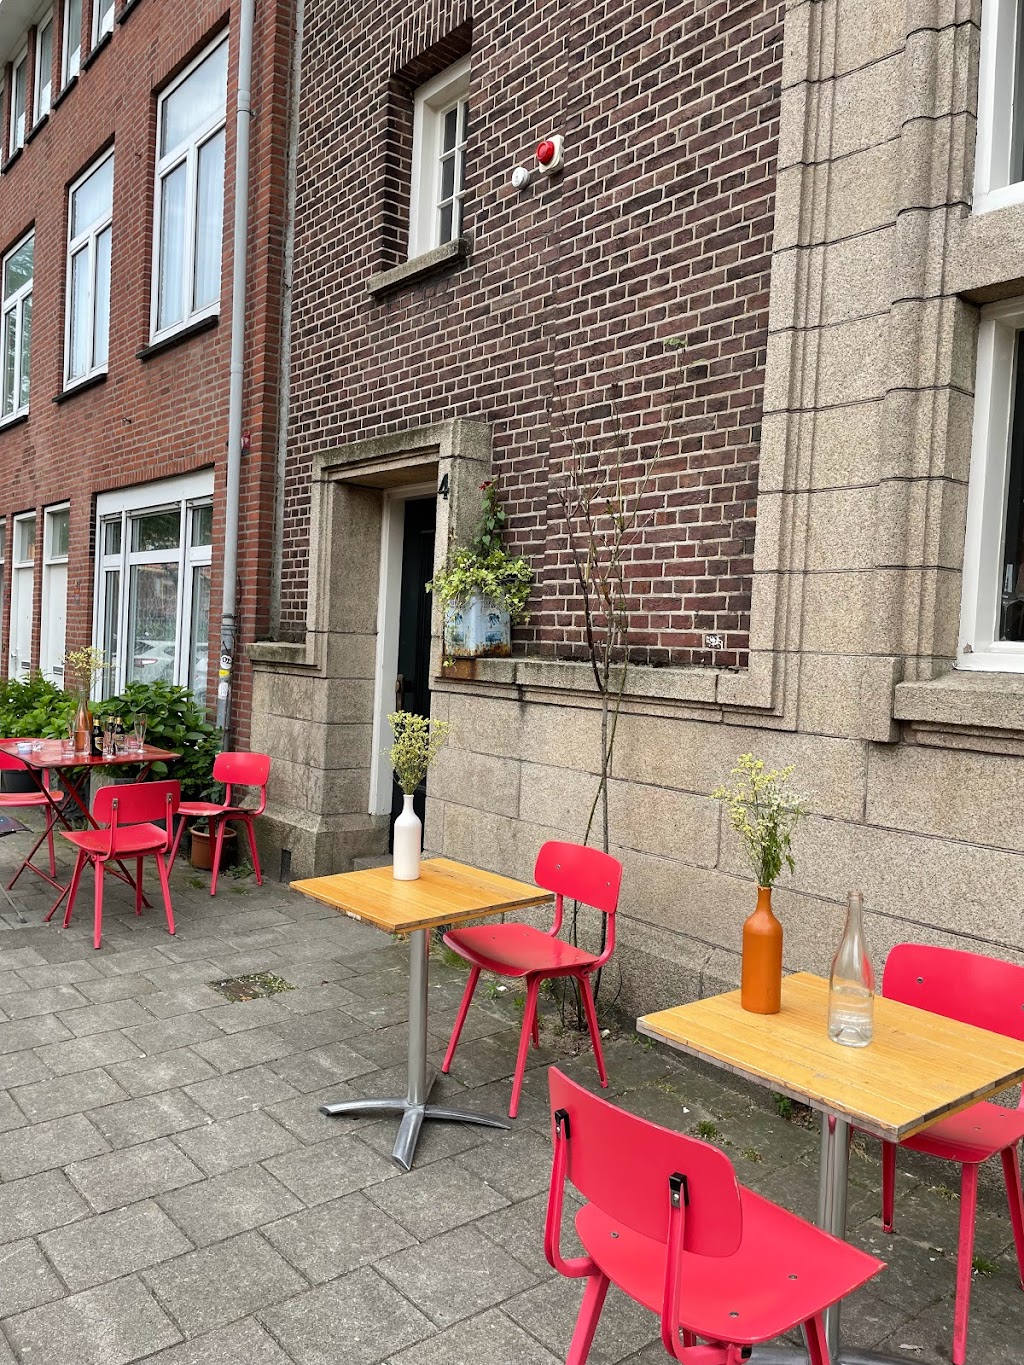 Café Modern | Meidoornweg 2, 1031 GG Amsterdam, Netherlands | Phone: 020 494 0684